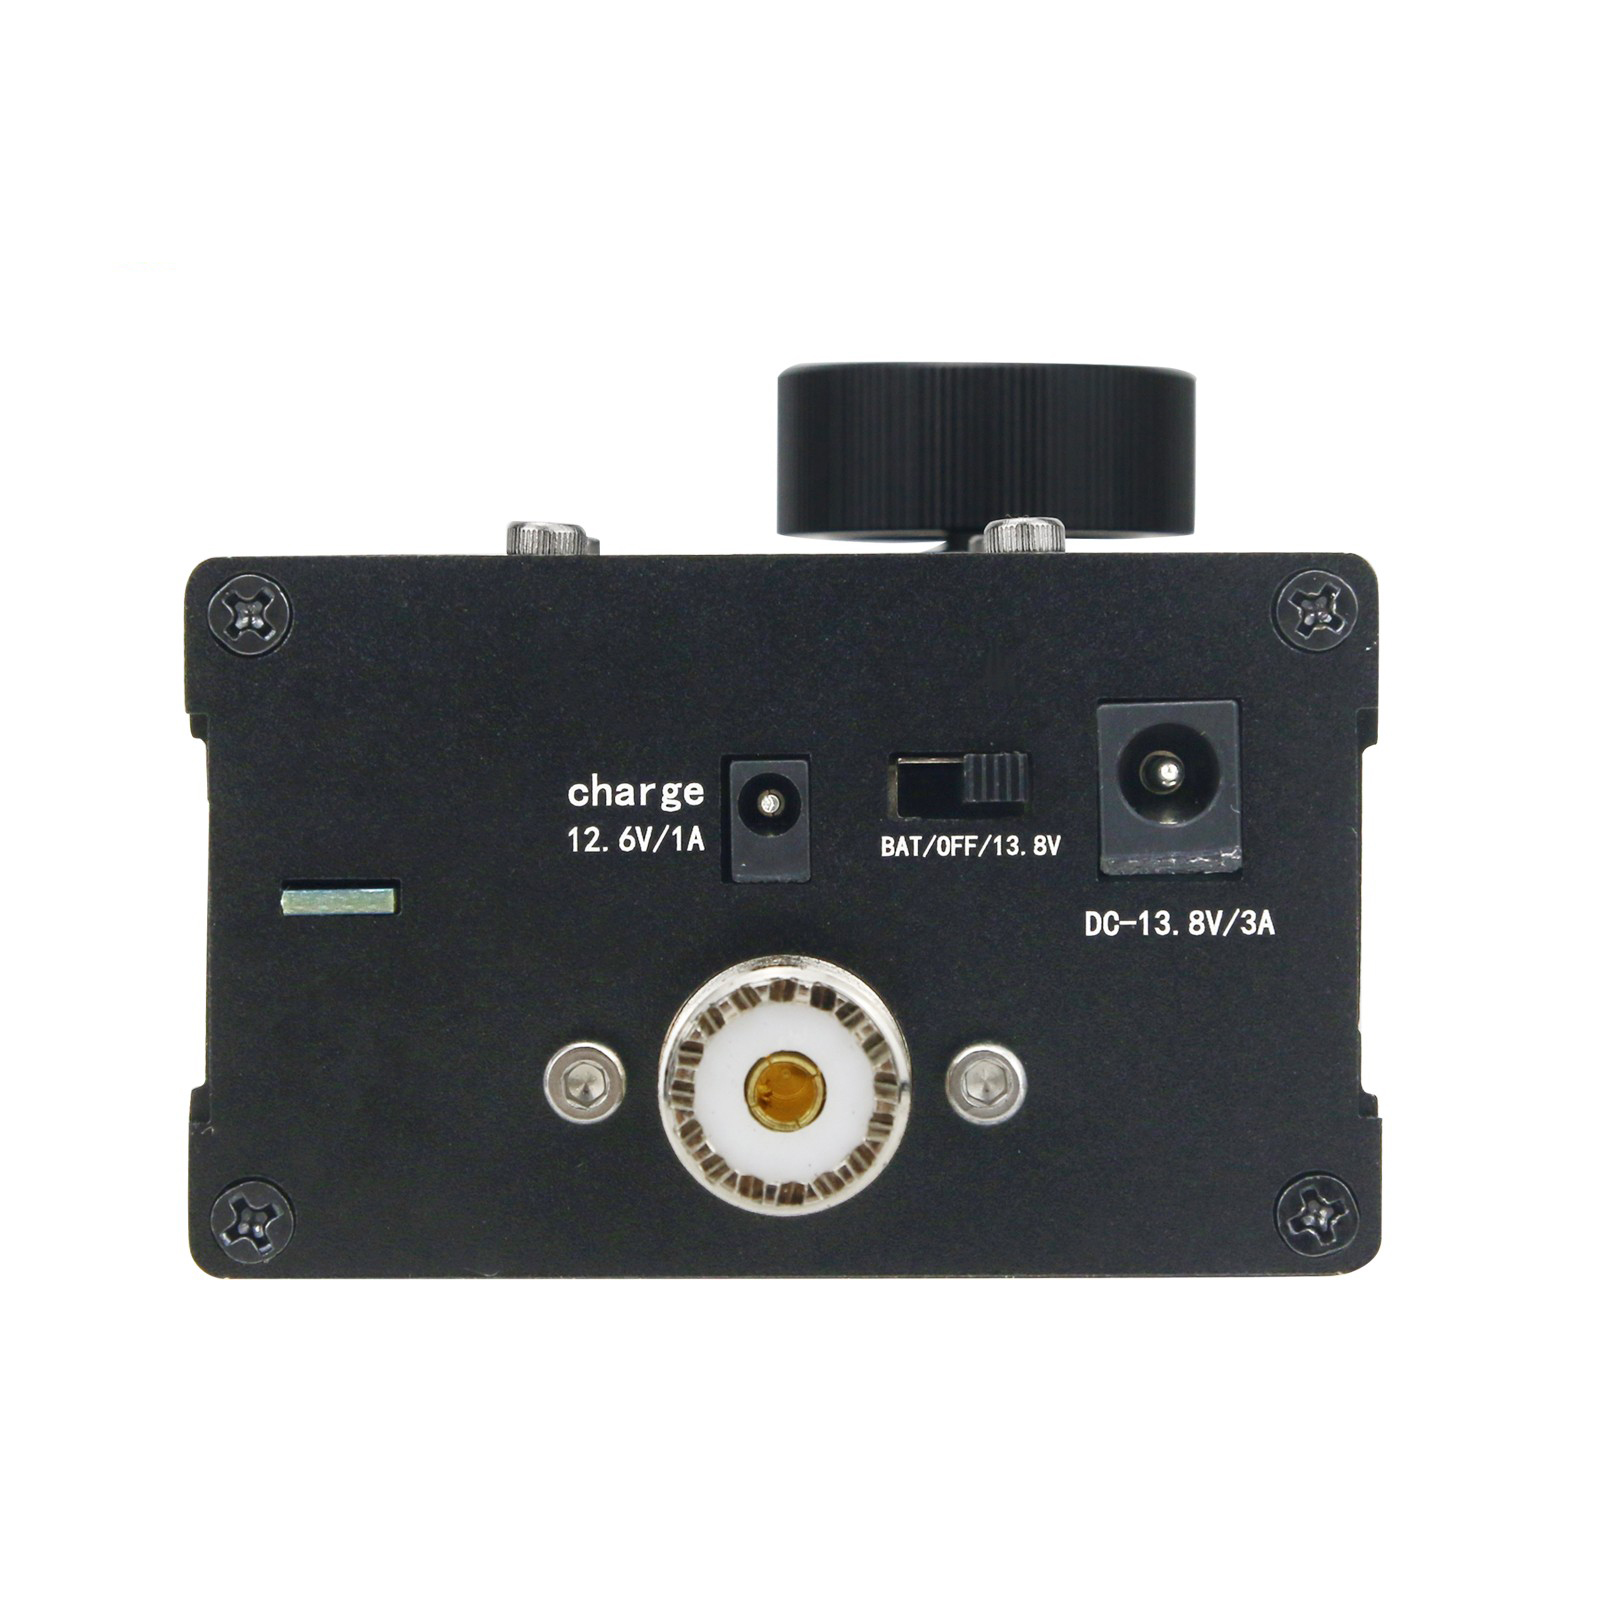 Portable-uSDX-8-Band-SDR-All-Mode-Transceiver-USB-LSB-CW-AM-FM-HF-SSB-QRP-Transceiver-QCX-SSB-with-B-1915485-3